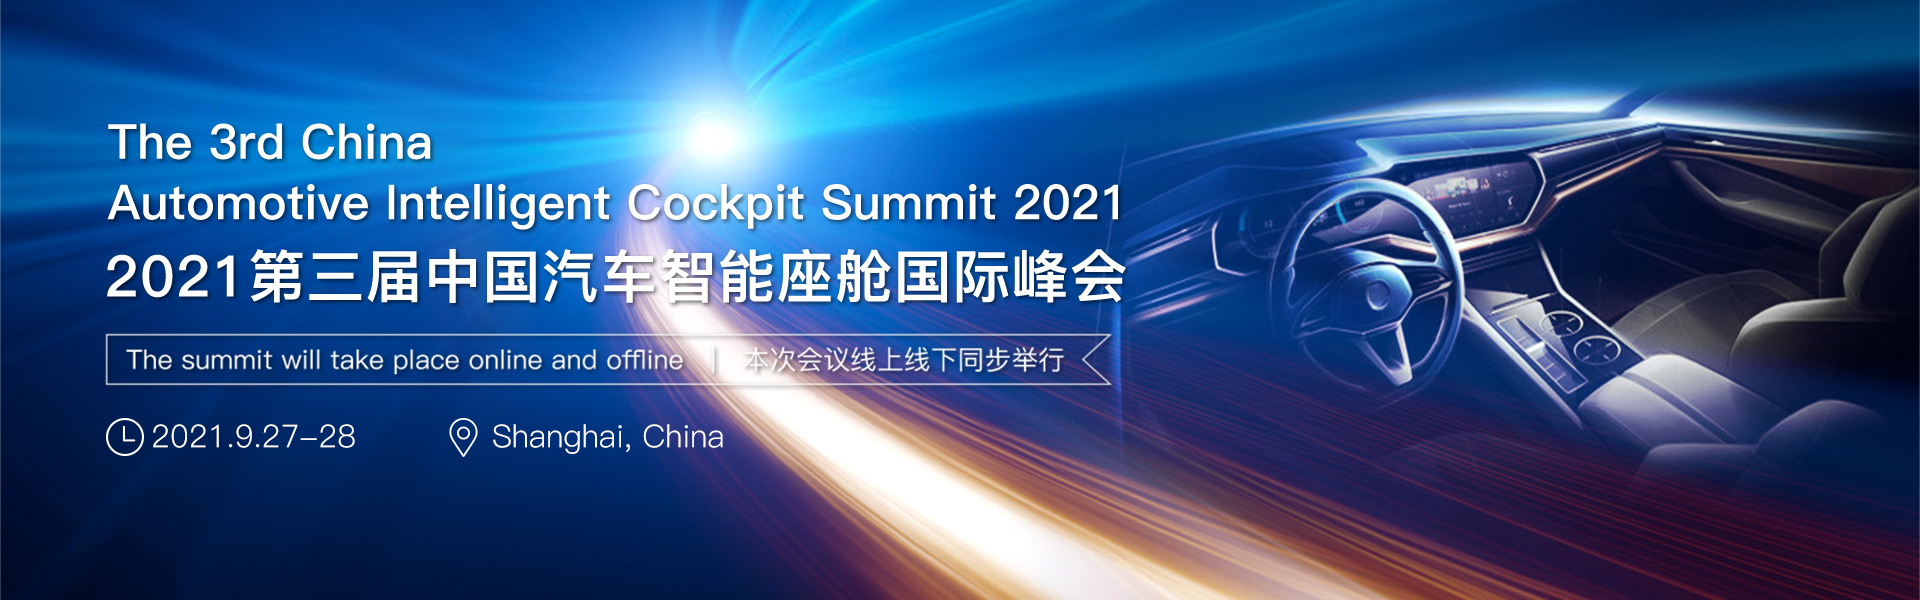 2021第三届汽车智能座舱国际峰会